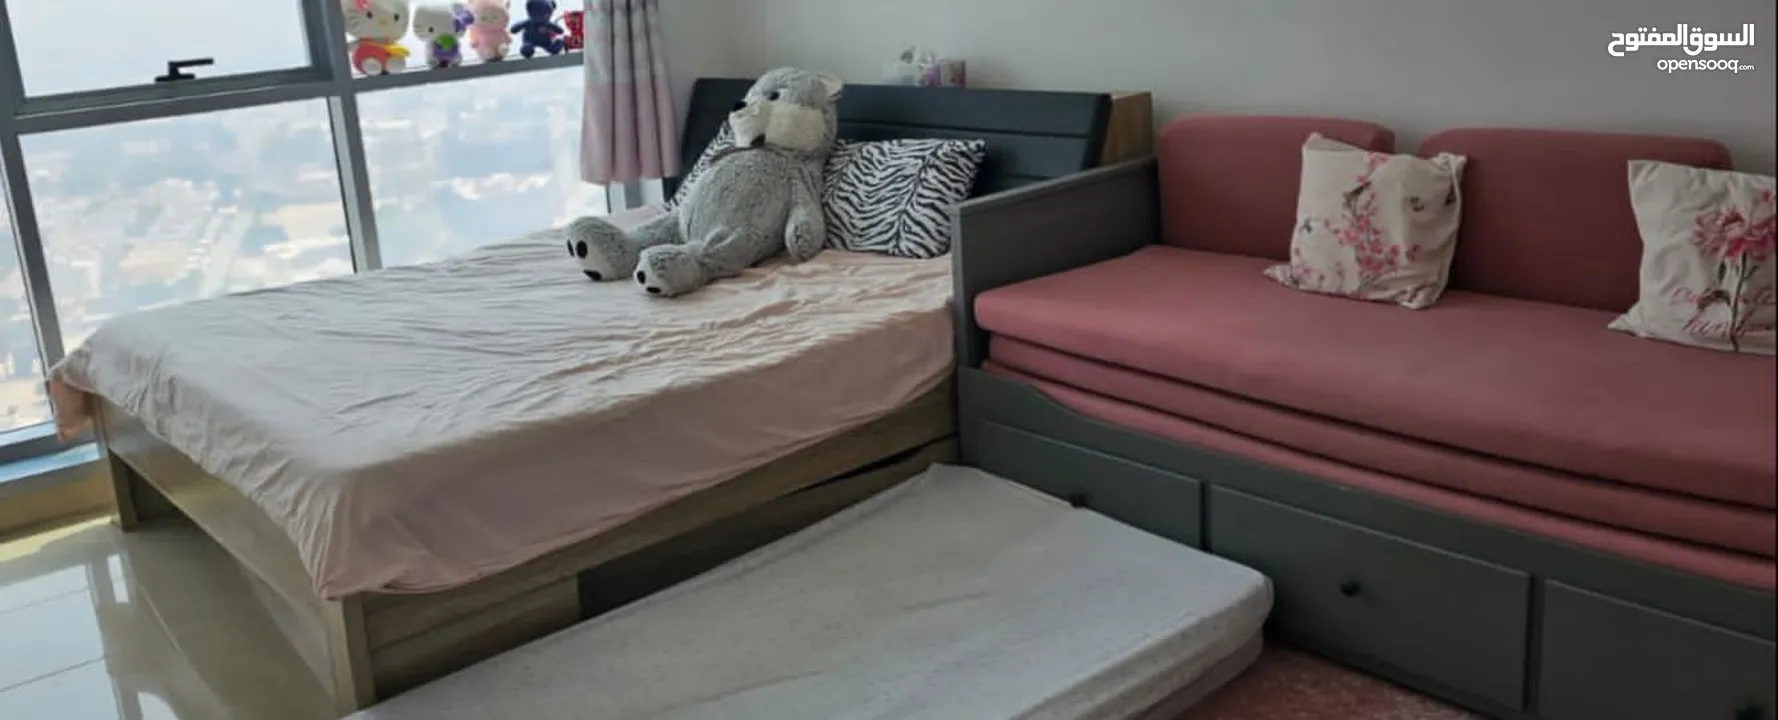 أريكة وسرير مفرد وسرير مزدوج وتخزين في قطعة أثاث واحدة! بالإضافة ل سرير كبير مزدوج مع دروج كثيرة